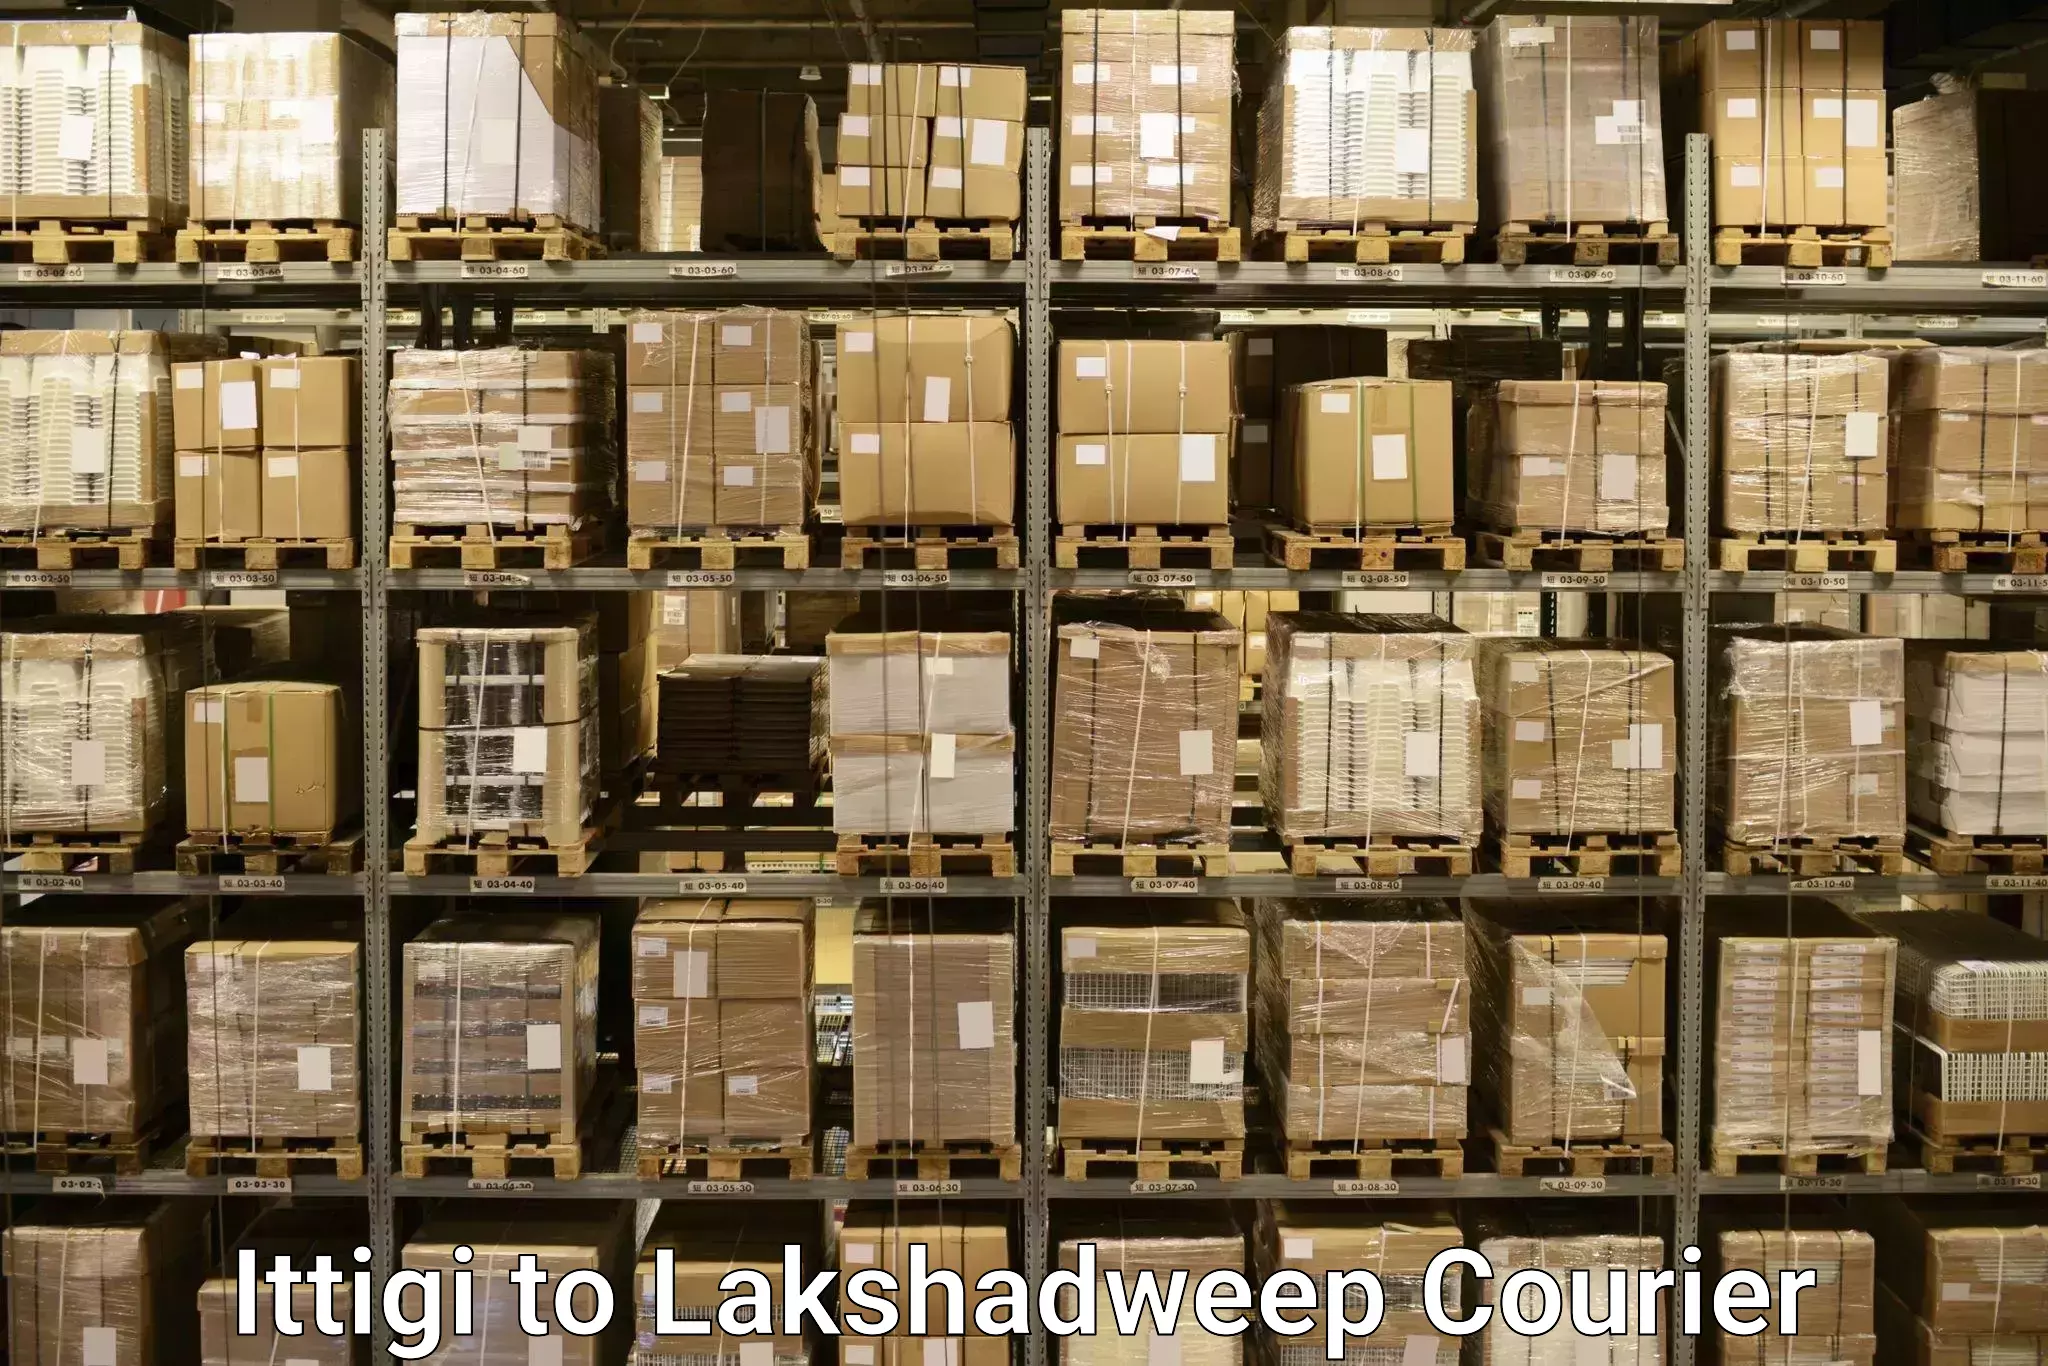 Customized luggage delivery Ittigi to Lakshadweep